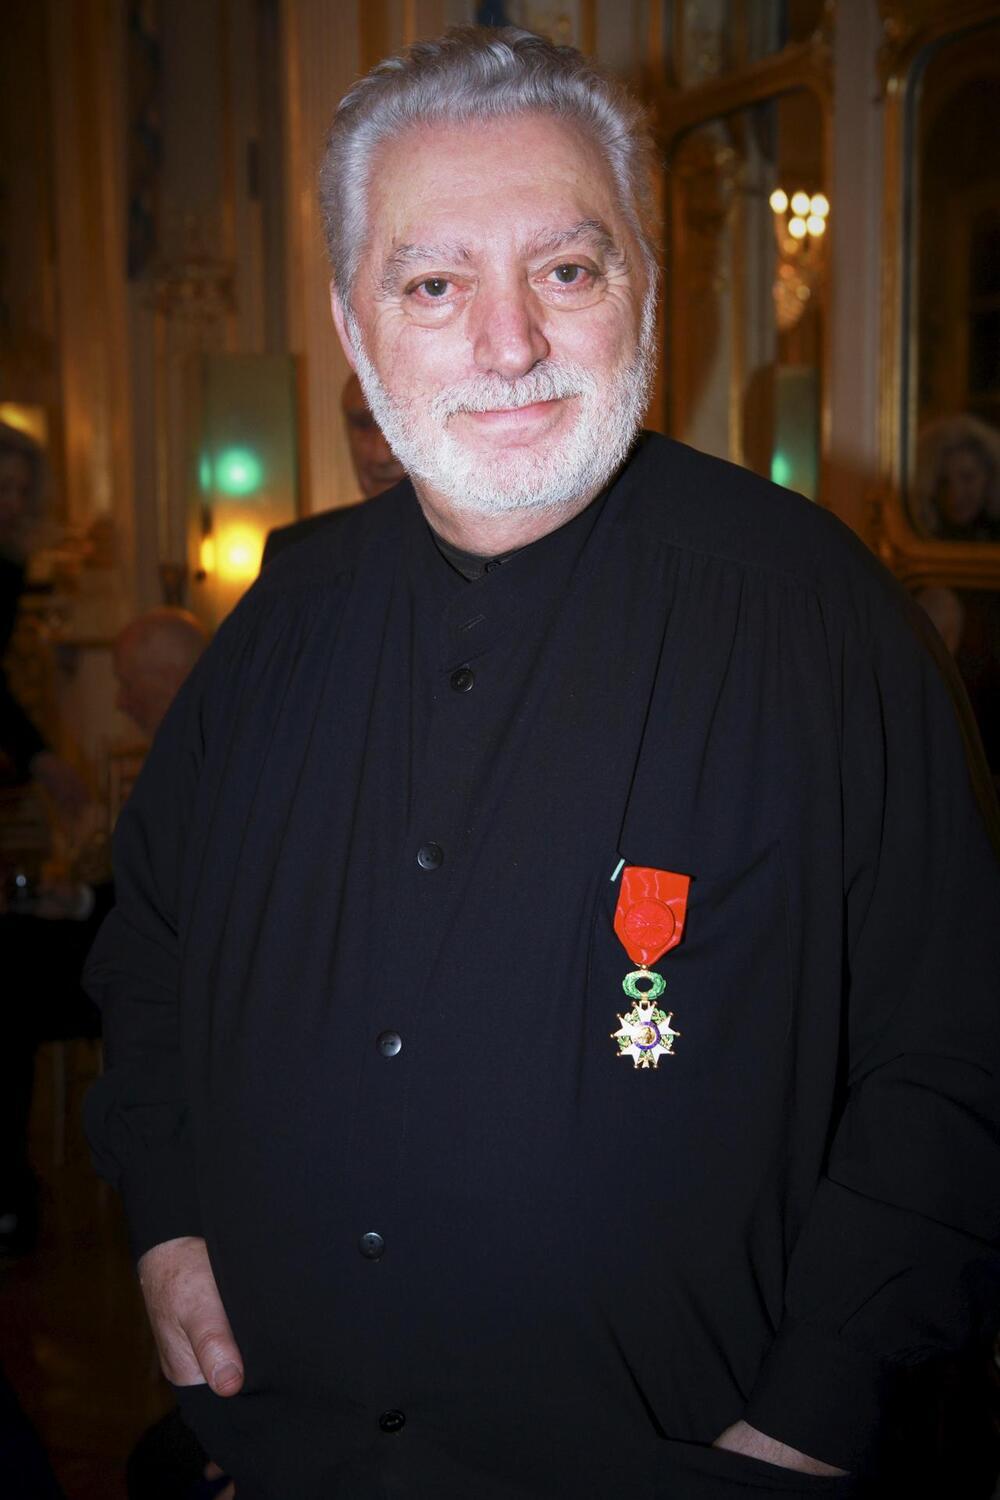 Foto de archivo, facilitada por Puig, de Paco Rabanne durante la entrega al modisto de la insignia de Oficial de la Orden Nacional de la Legión de Honor francesa, en París.